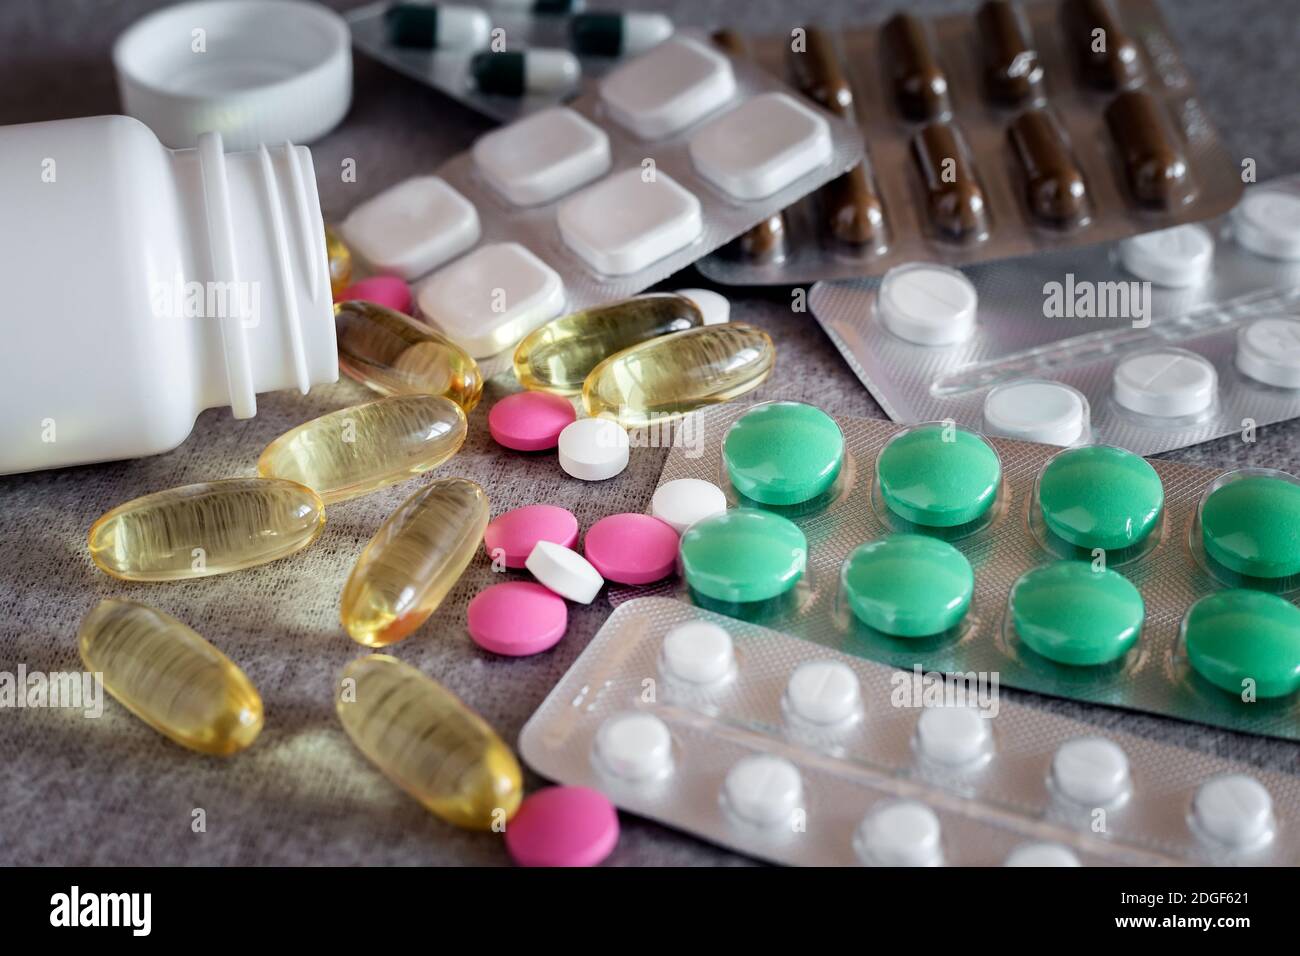 Farmacia y Medicina: diferentes tipos de formas farmacéuticas. Foto de stock